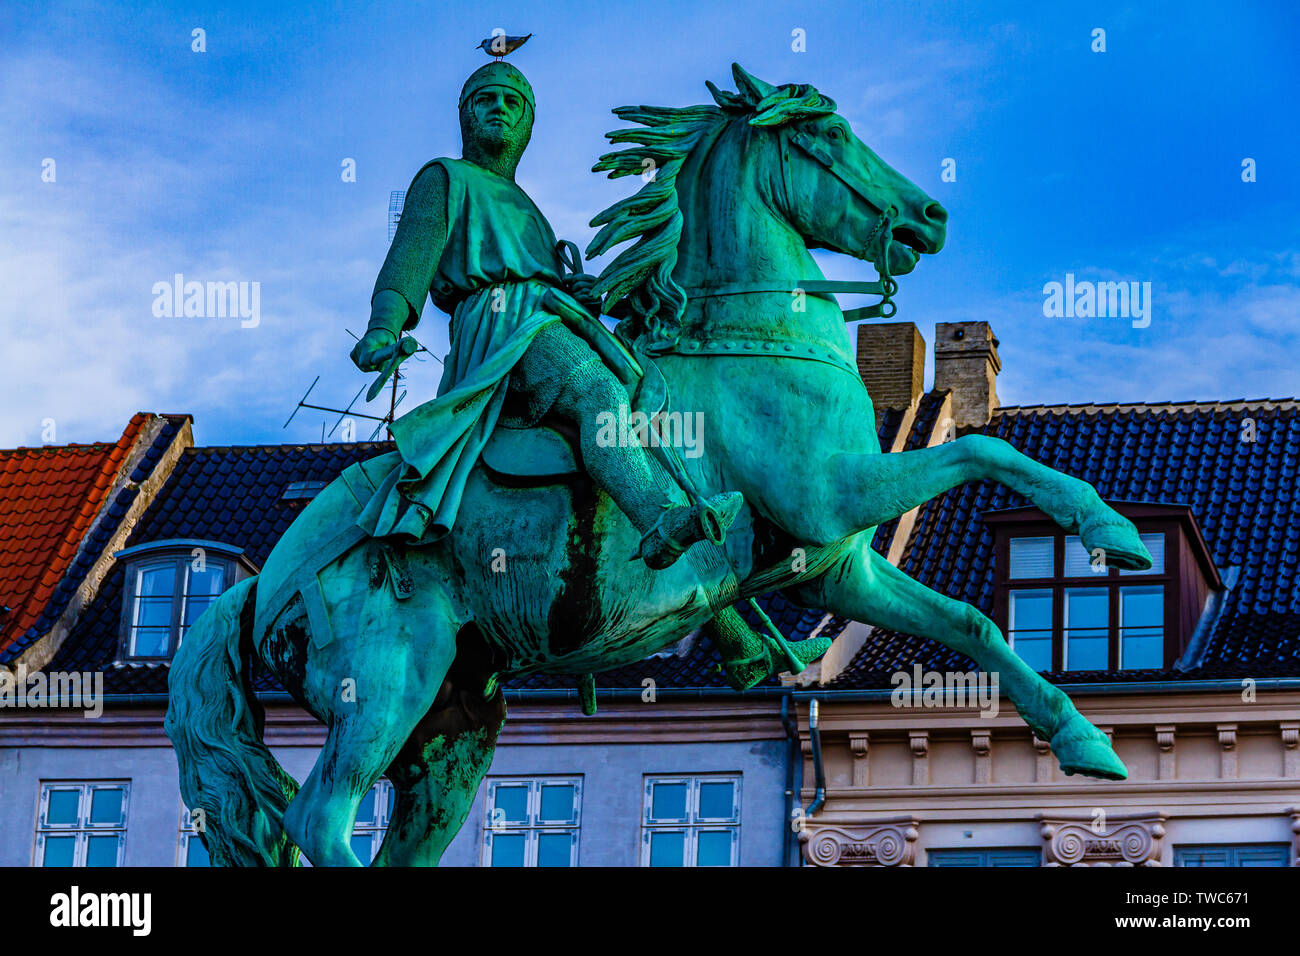 Statue de l'évêque Absalon, le légendaire fondateur du 12ème siècle de la ville de Copenhague. Copenhague, Danemark. Janvier 2019. Banque D'Images